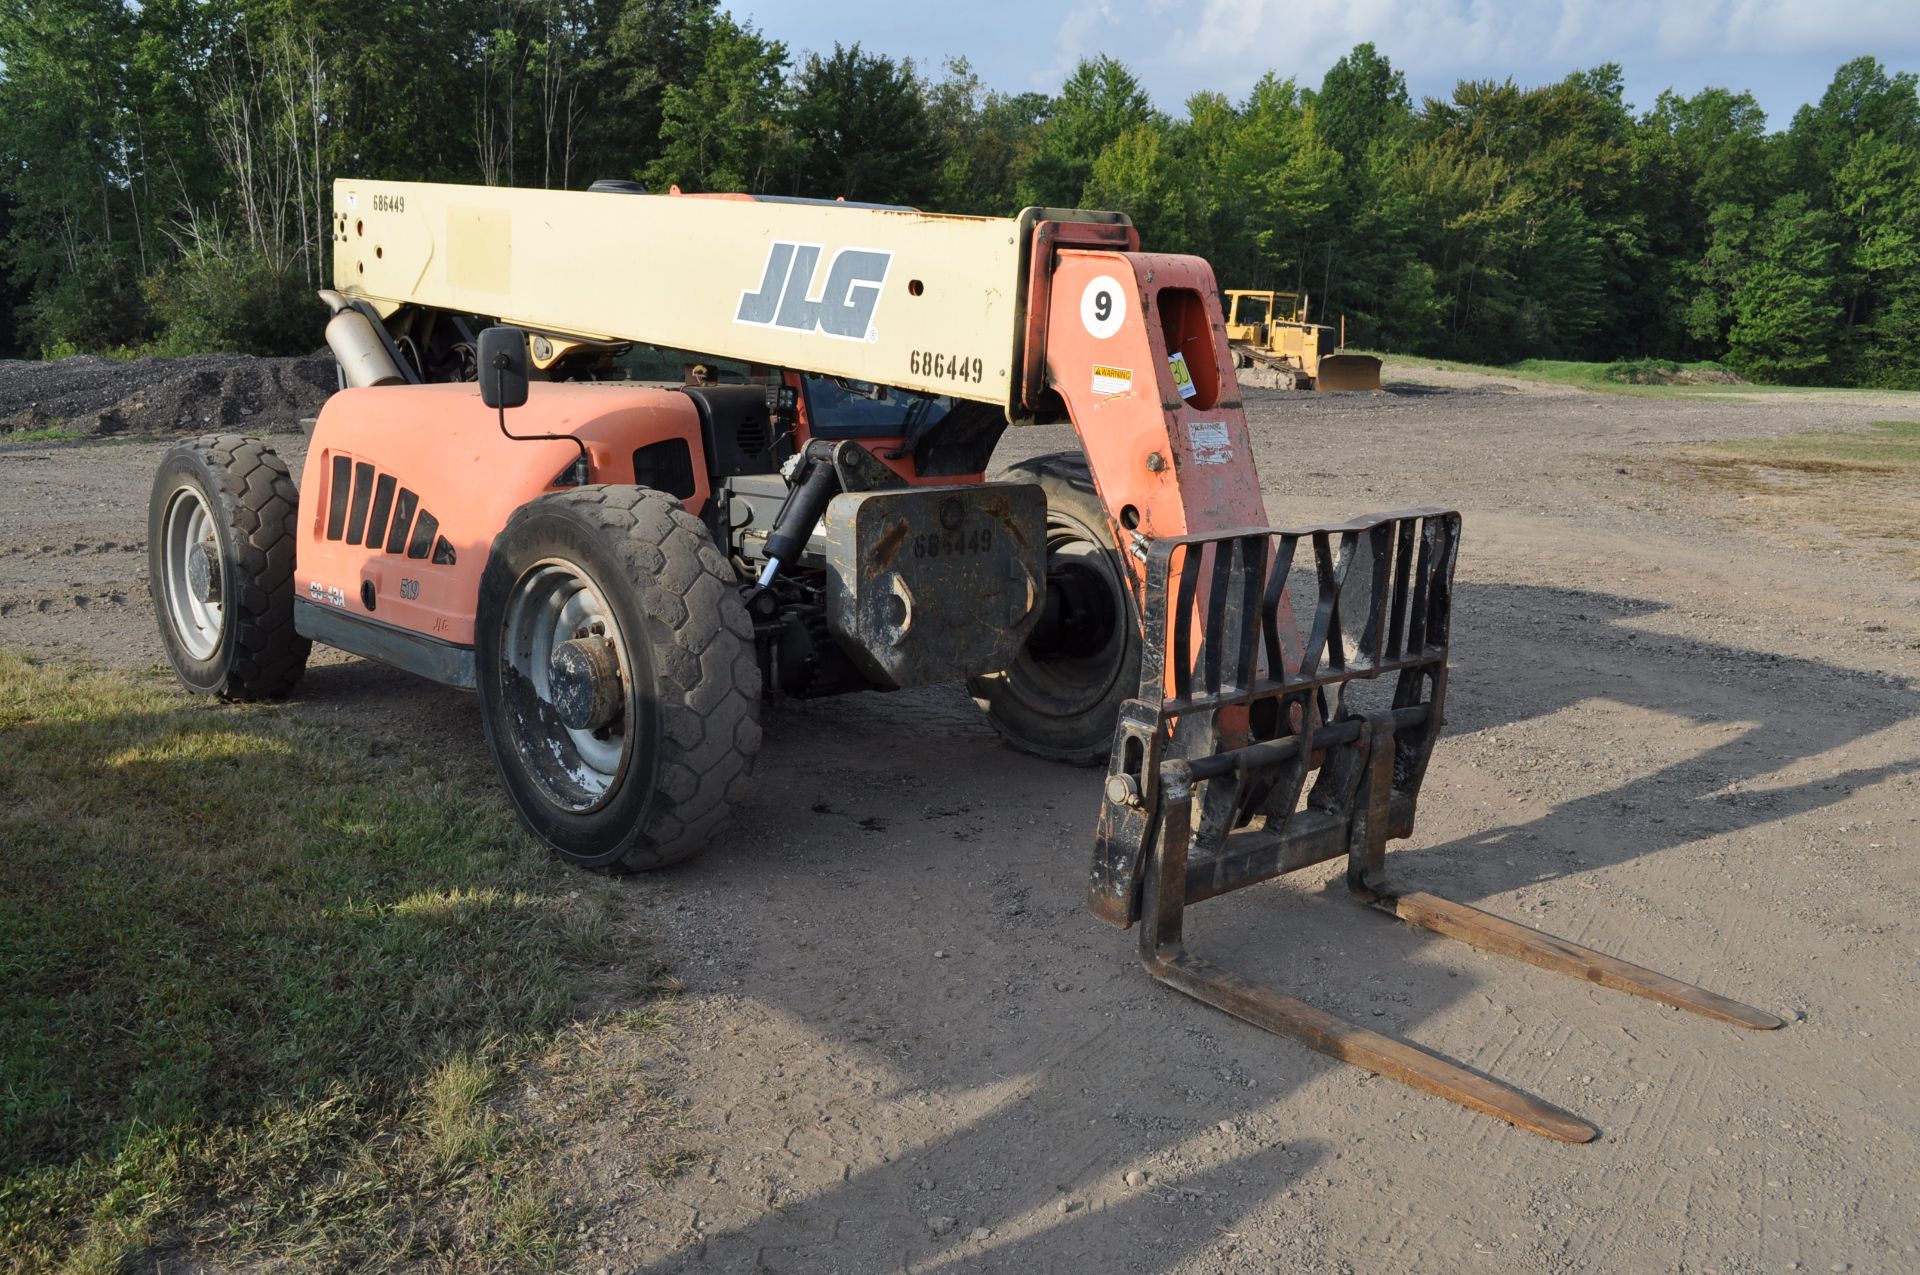 JLG G9-43A telehandler, 4x4, John Deere diesel, all wheel steer, 370/75-28 tires, cab, 6711 hrs - Image 2 of 29